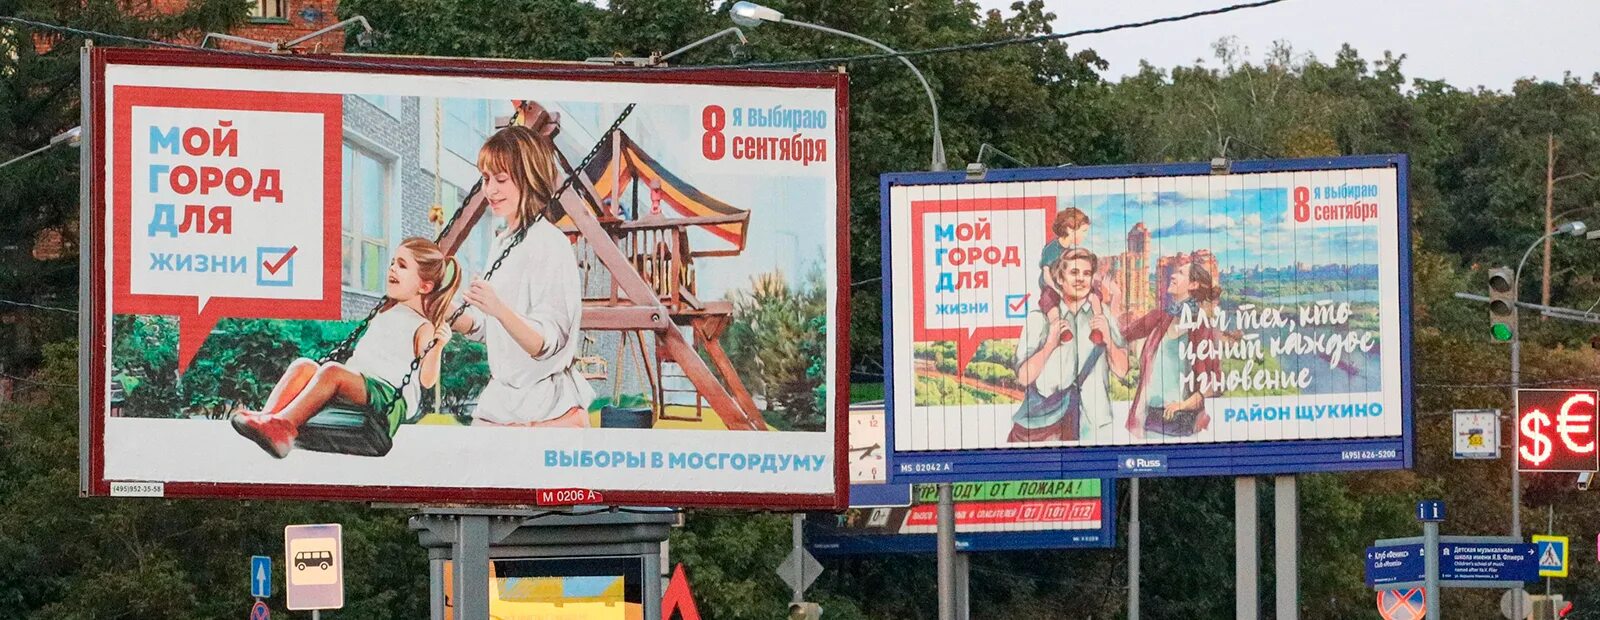 Выборы 29 ру. Выборы в Мосгордуму 2019 агитация.